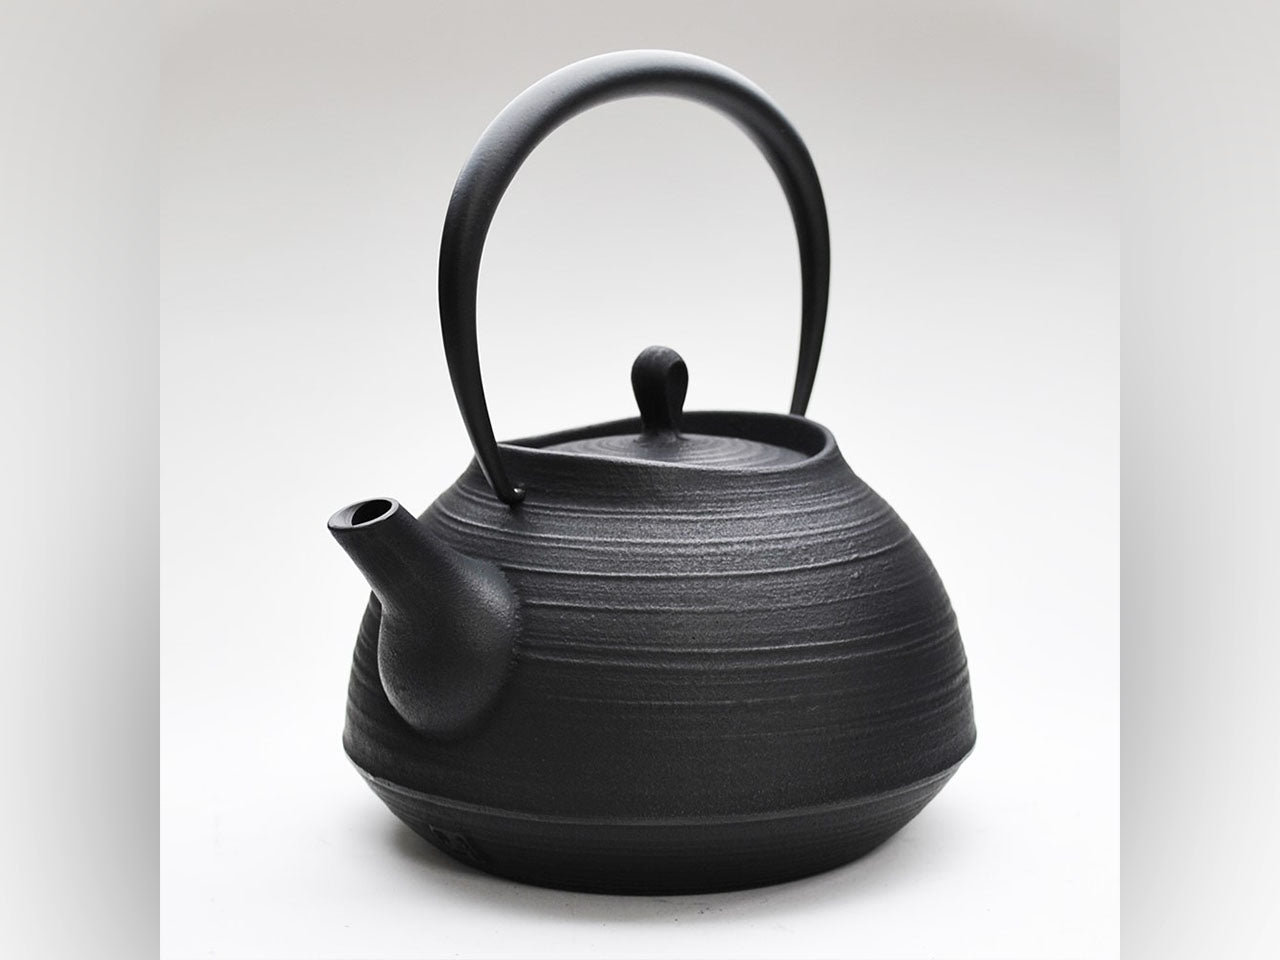 茶具 鐵壺 刷毛目 1.3L 黑色 200V電磁爐可用 南部鐵器 金屬工藝品